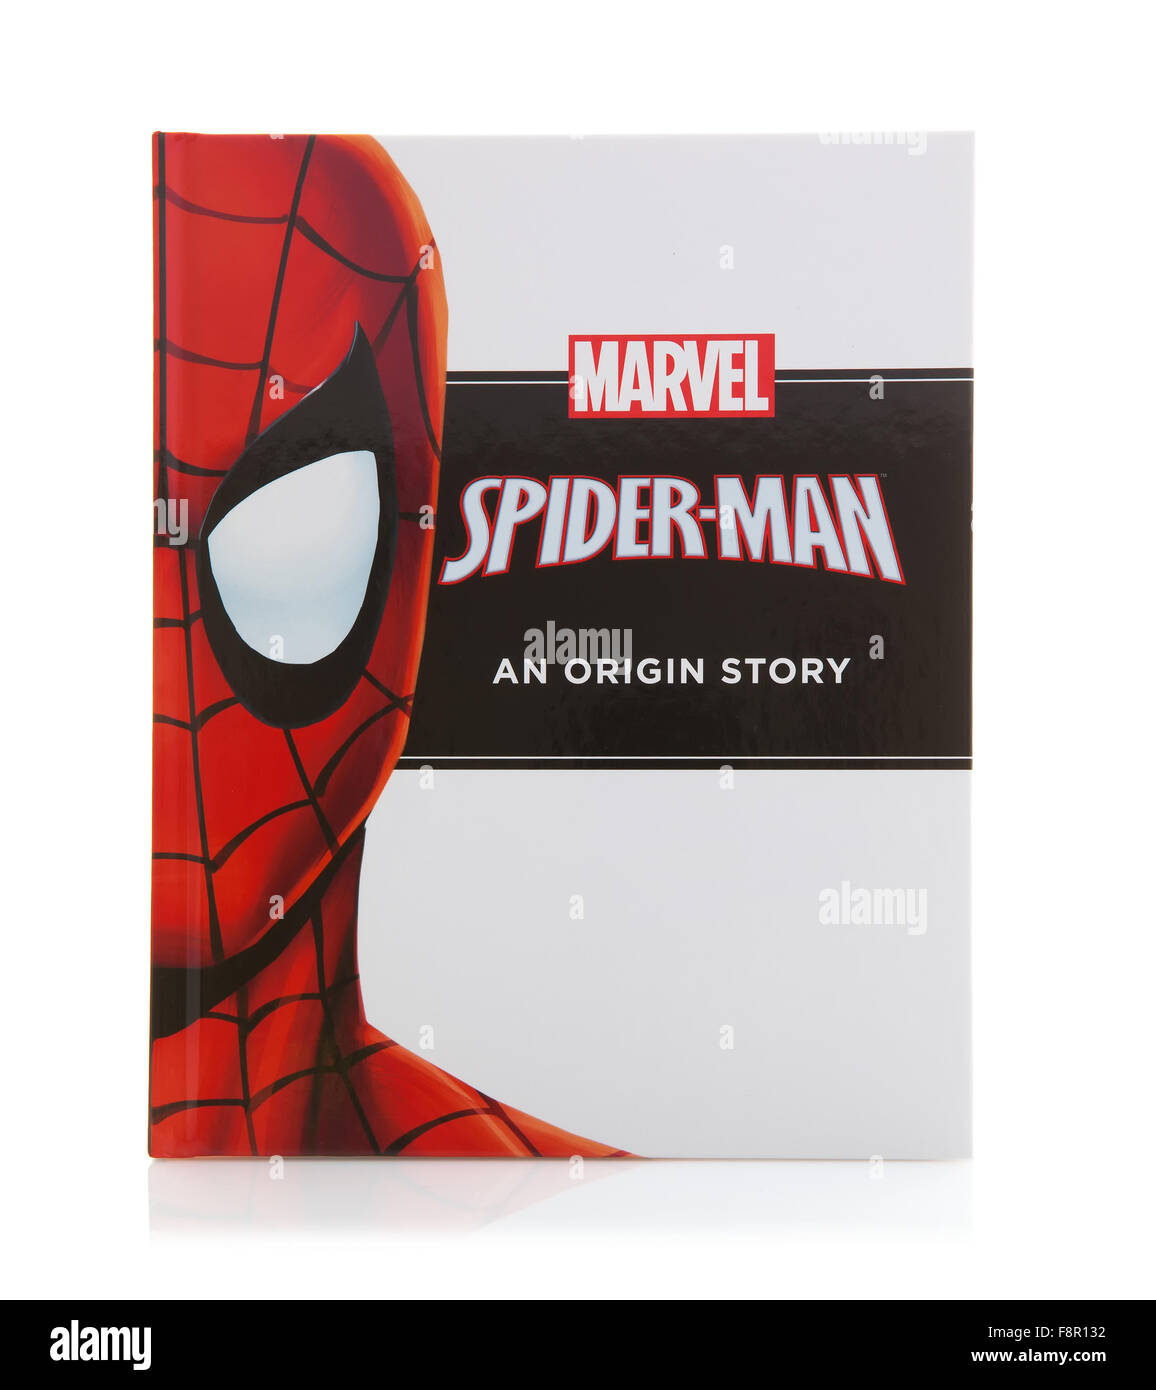 Livre MARVEL Spider-man une origine histoire de super héros sur un fond blanc Banque D'Images